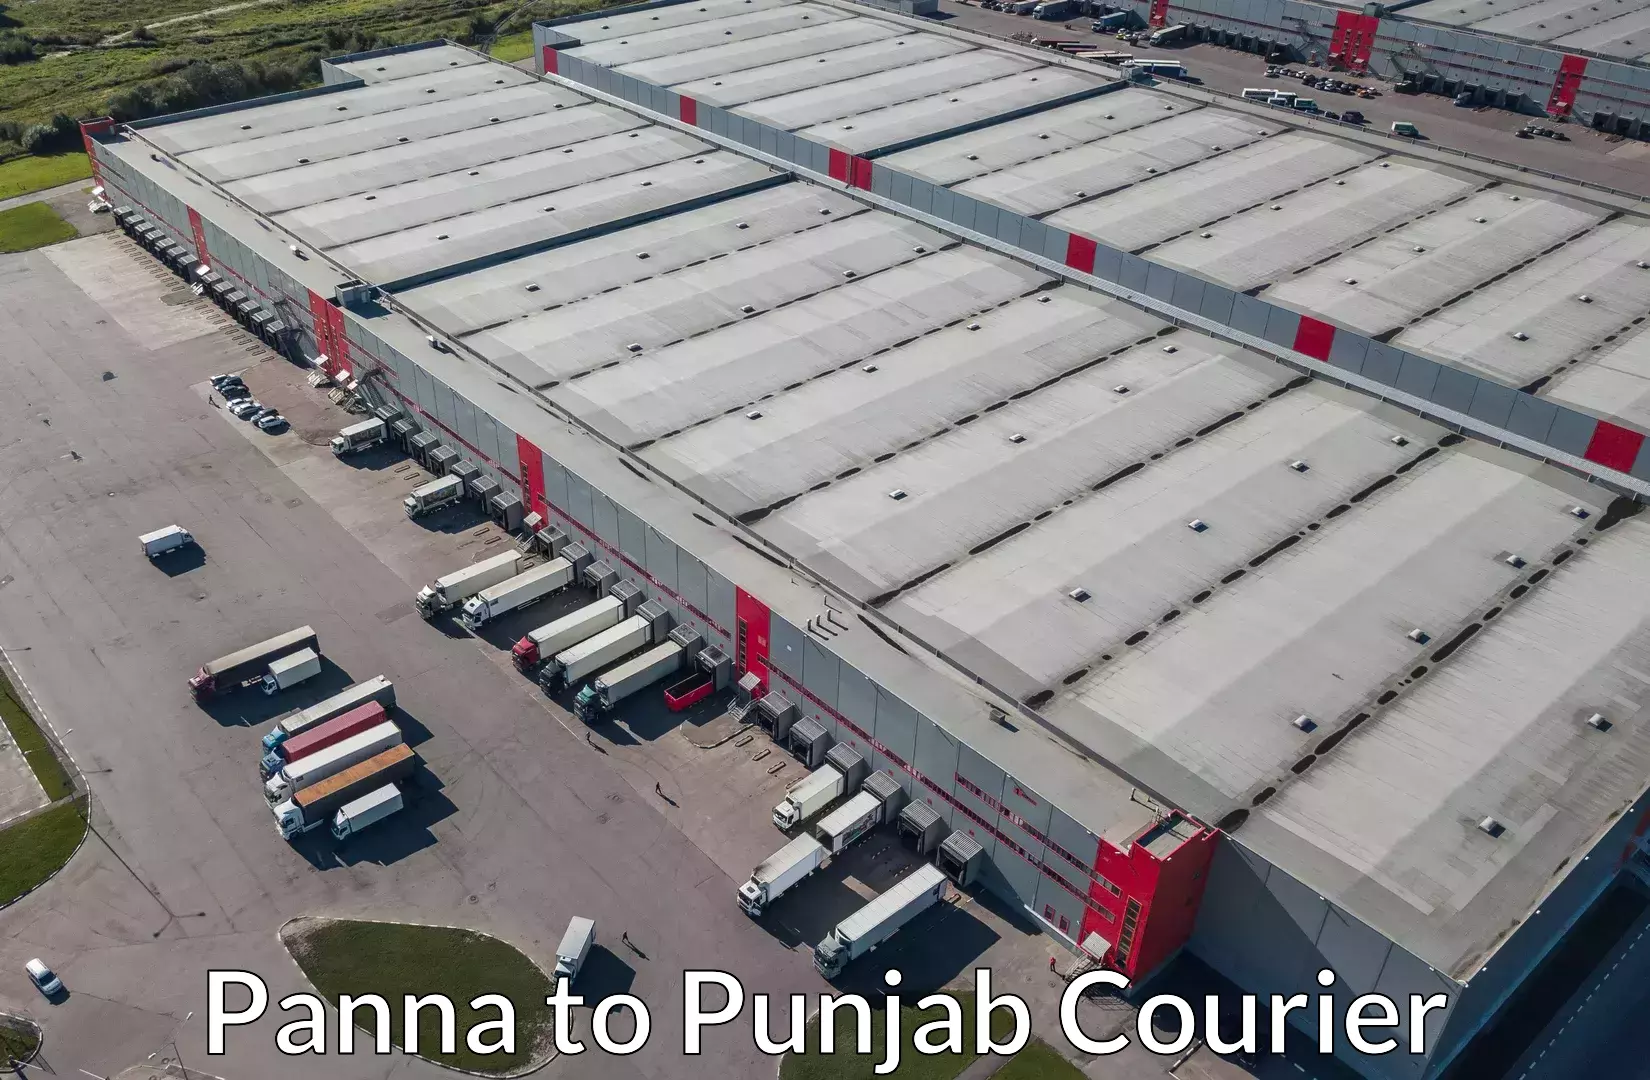 Baggage shipping service Panna to Punjab